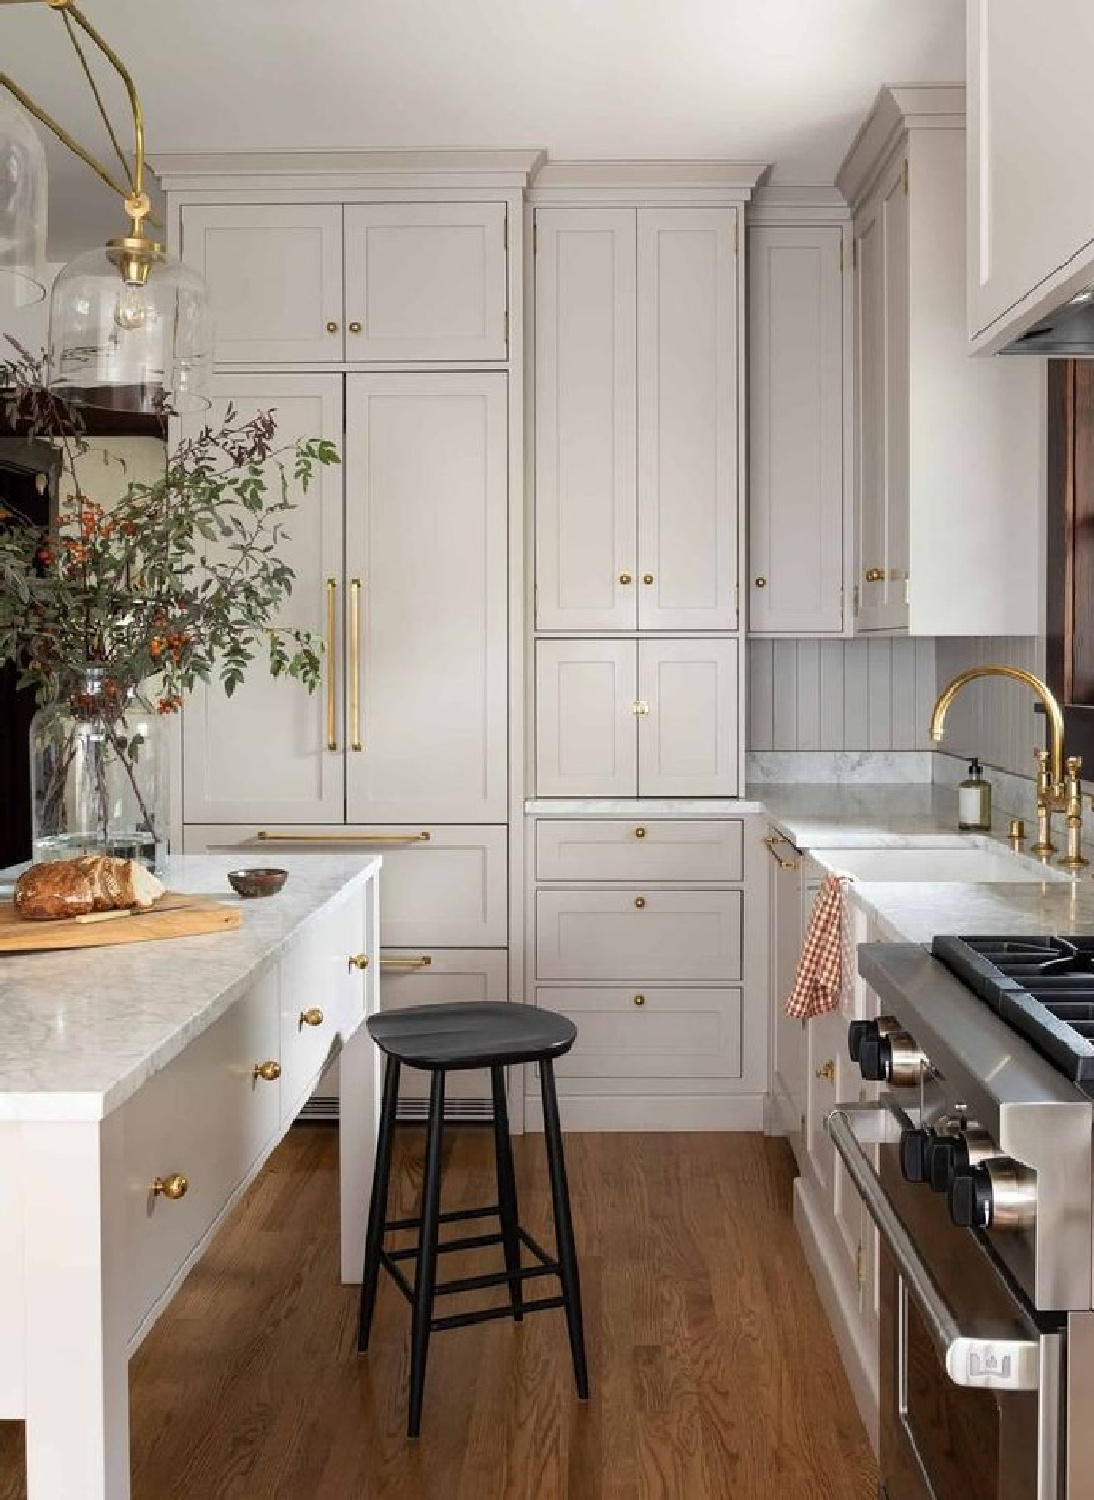 Breathtaking custom kitchen with chic  warm beige kitchen cabinets and brass hardware - @heidicaillierdesign.#greiegekitchens #serenekitchen #beigekitchencabinets